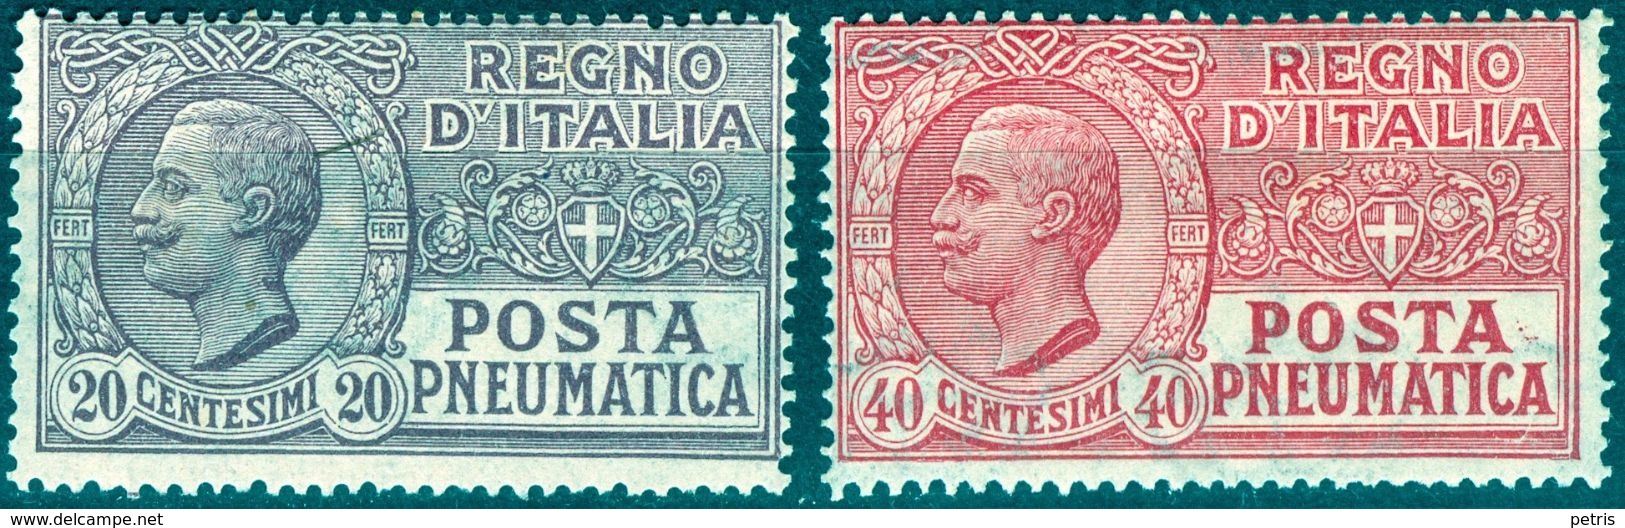 Italy 1925 Posta Pneumatica 20+40 C. MNH** - Lot. REPN8-PN9 - Pneumatische Post